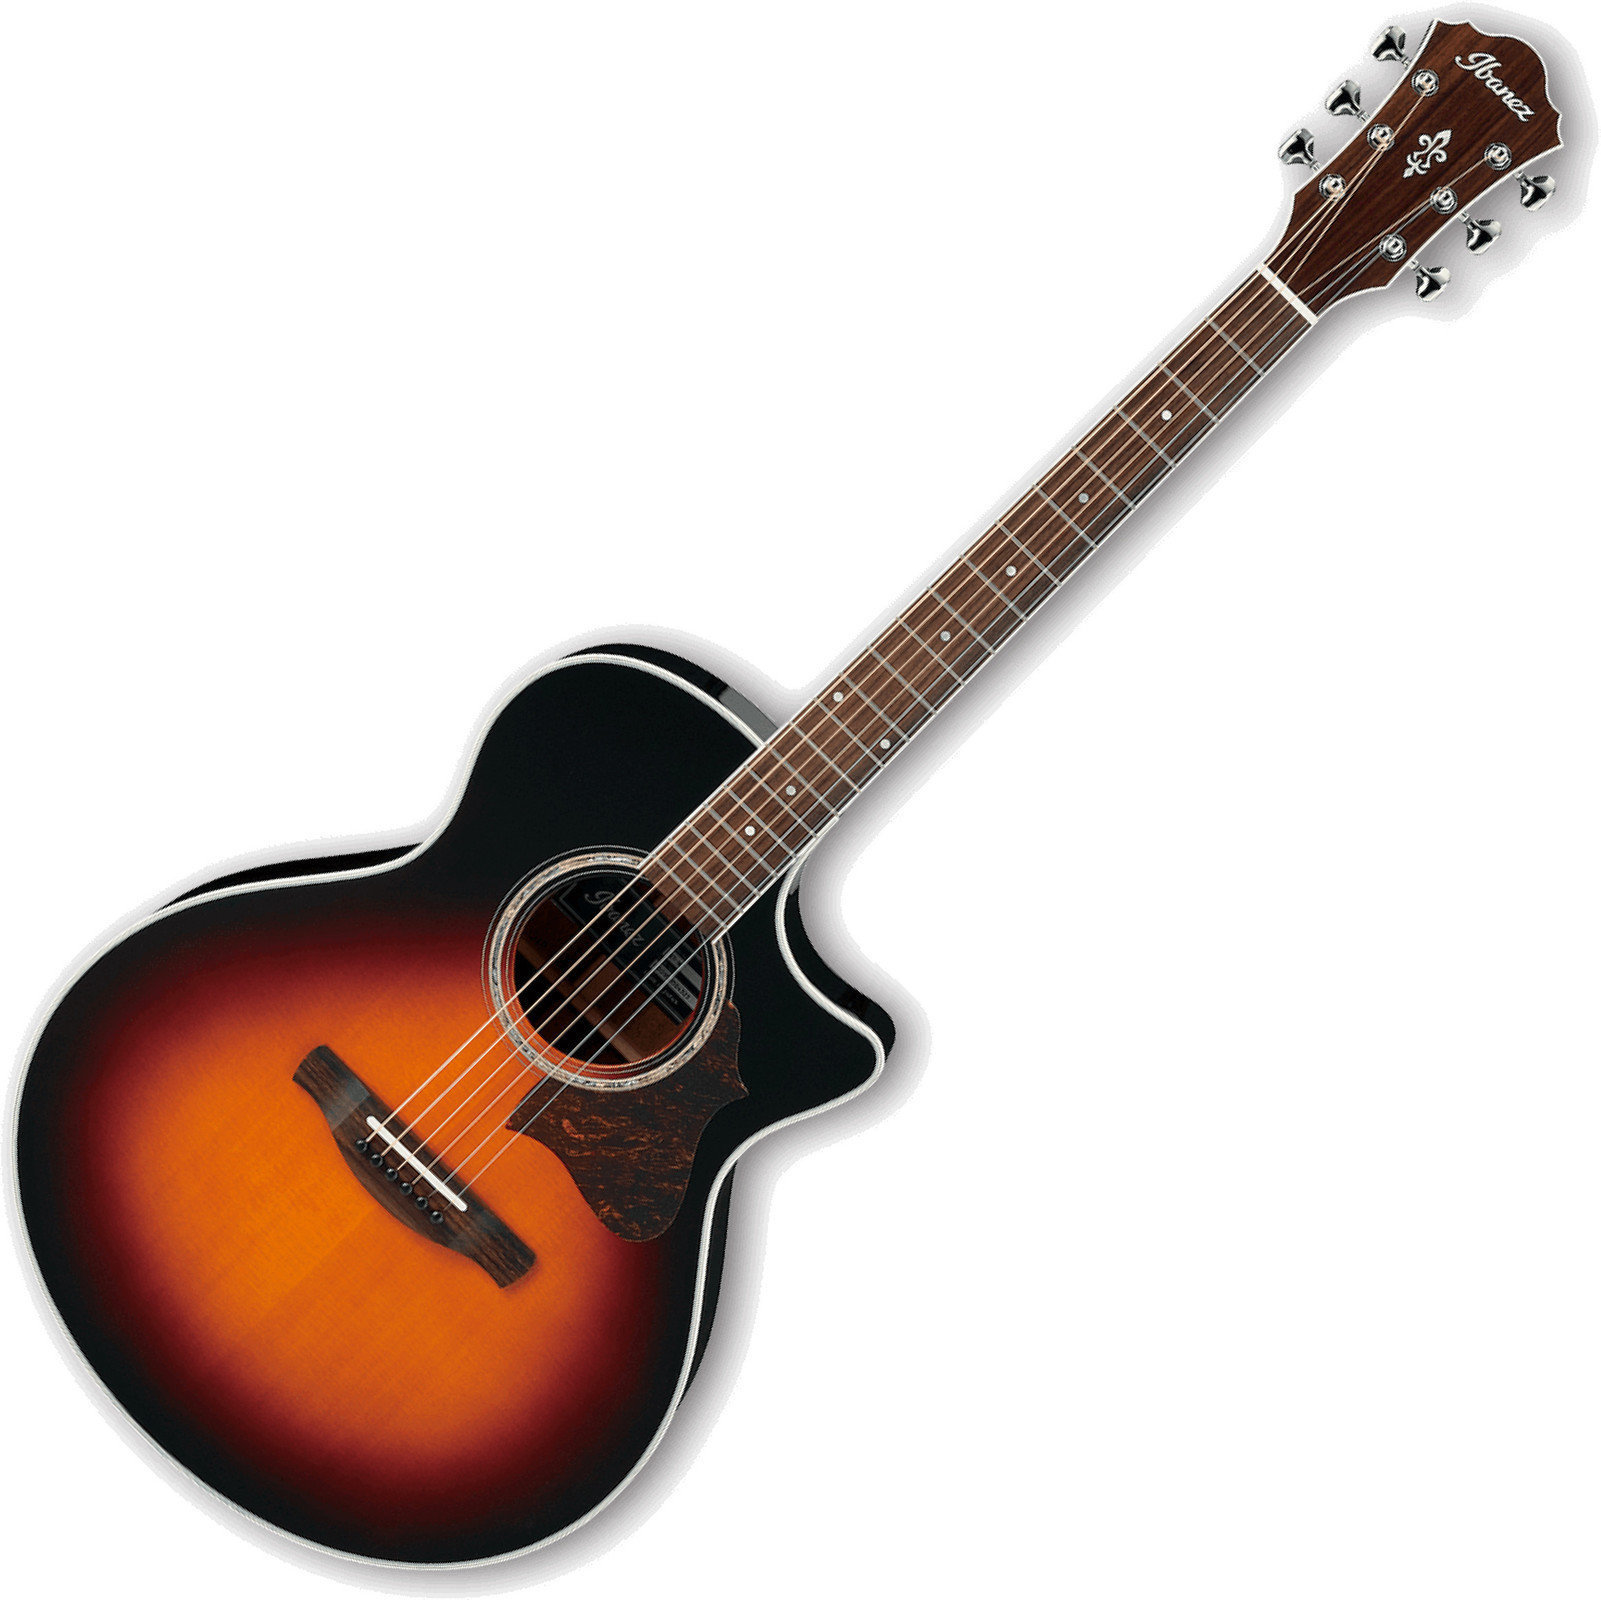 Ηλεκτροακουστική Κιθάρα Jumbo Ibanez AE800 Antique Sunburst High Gloss